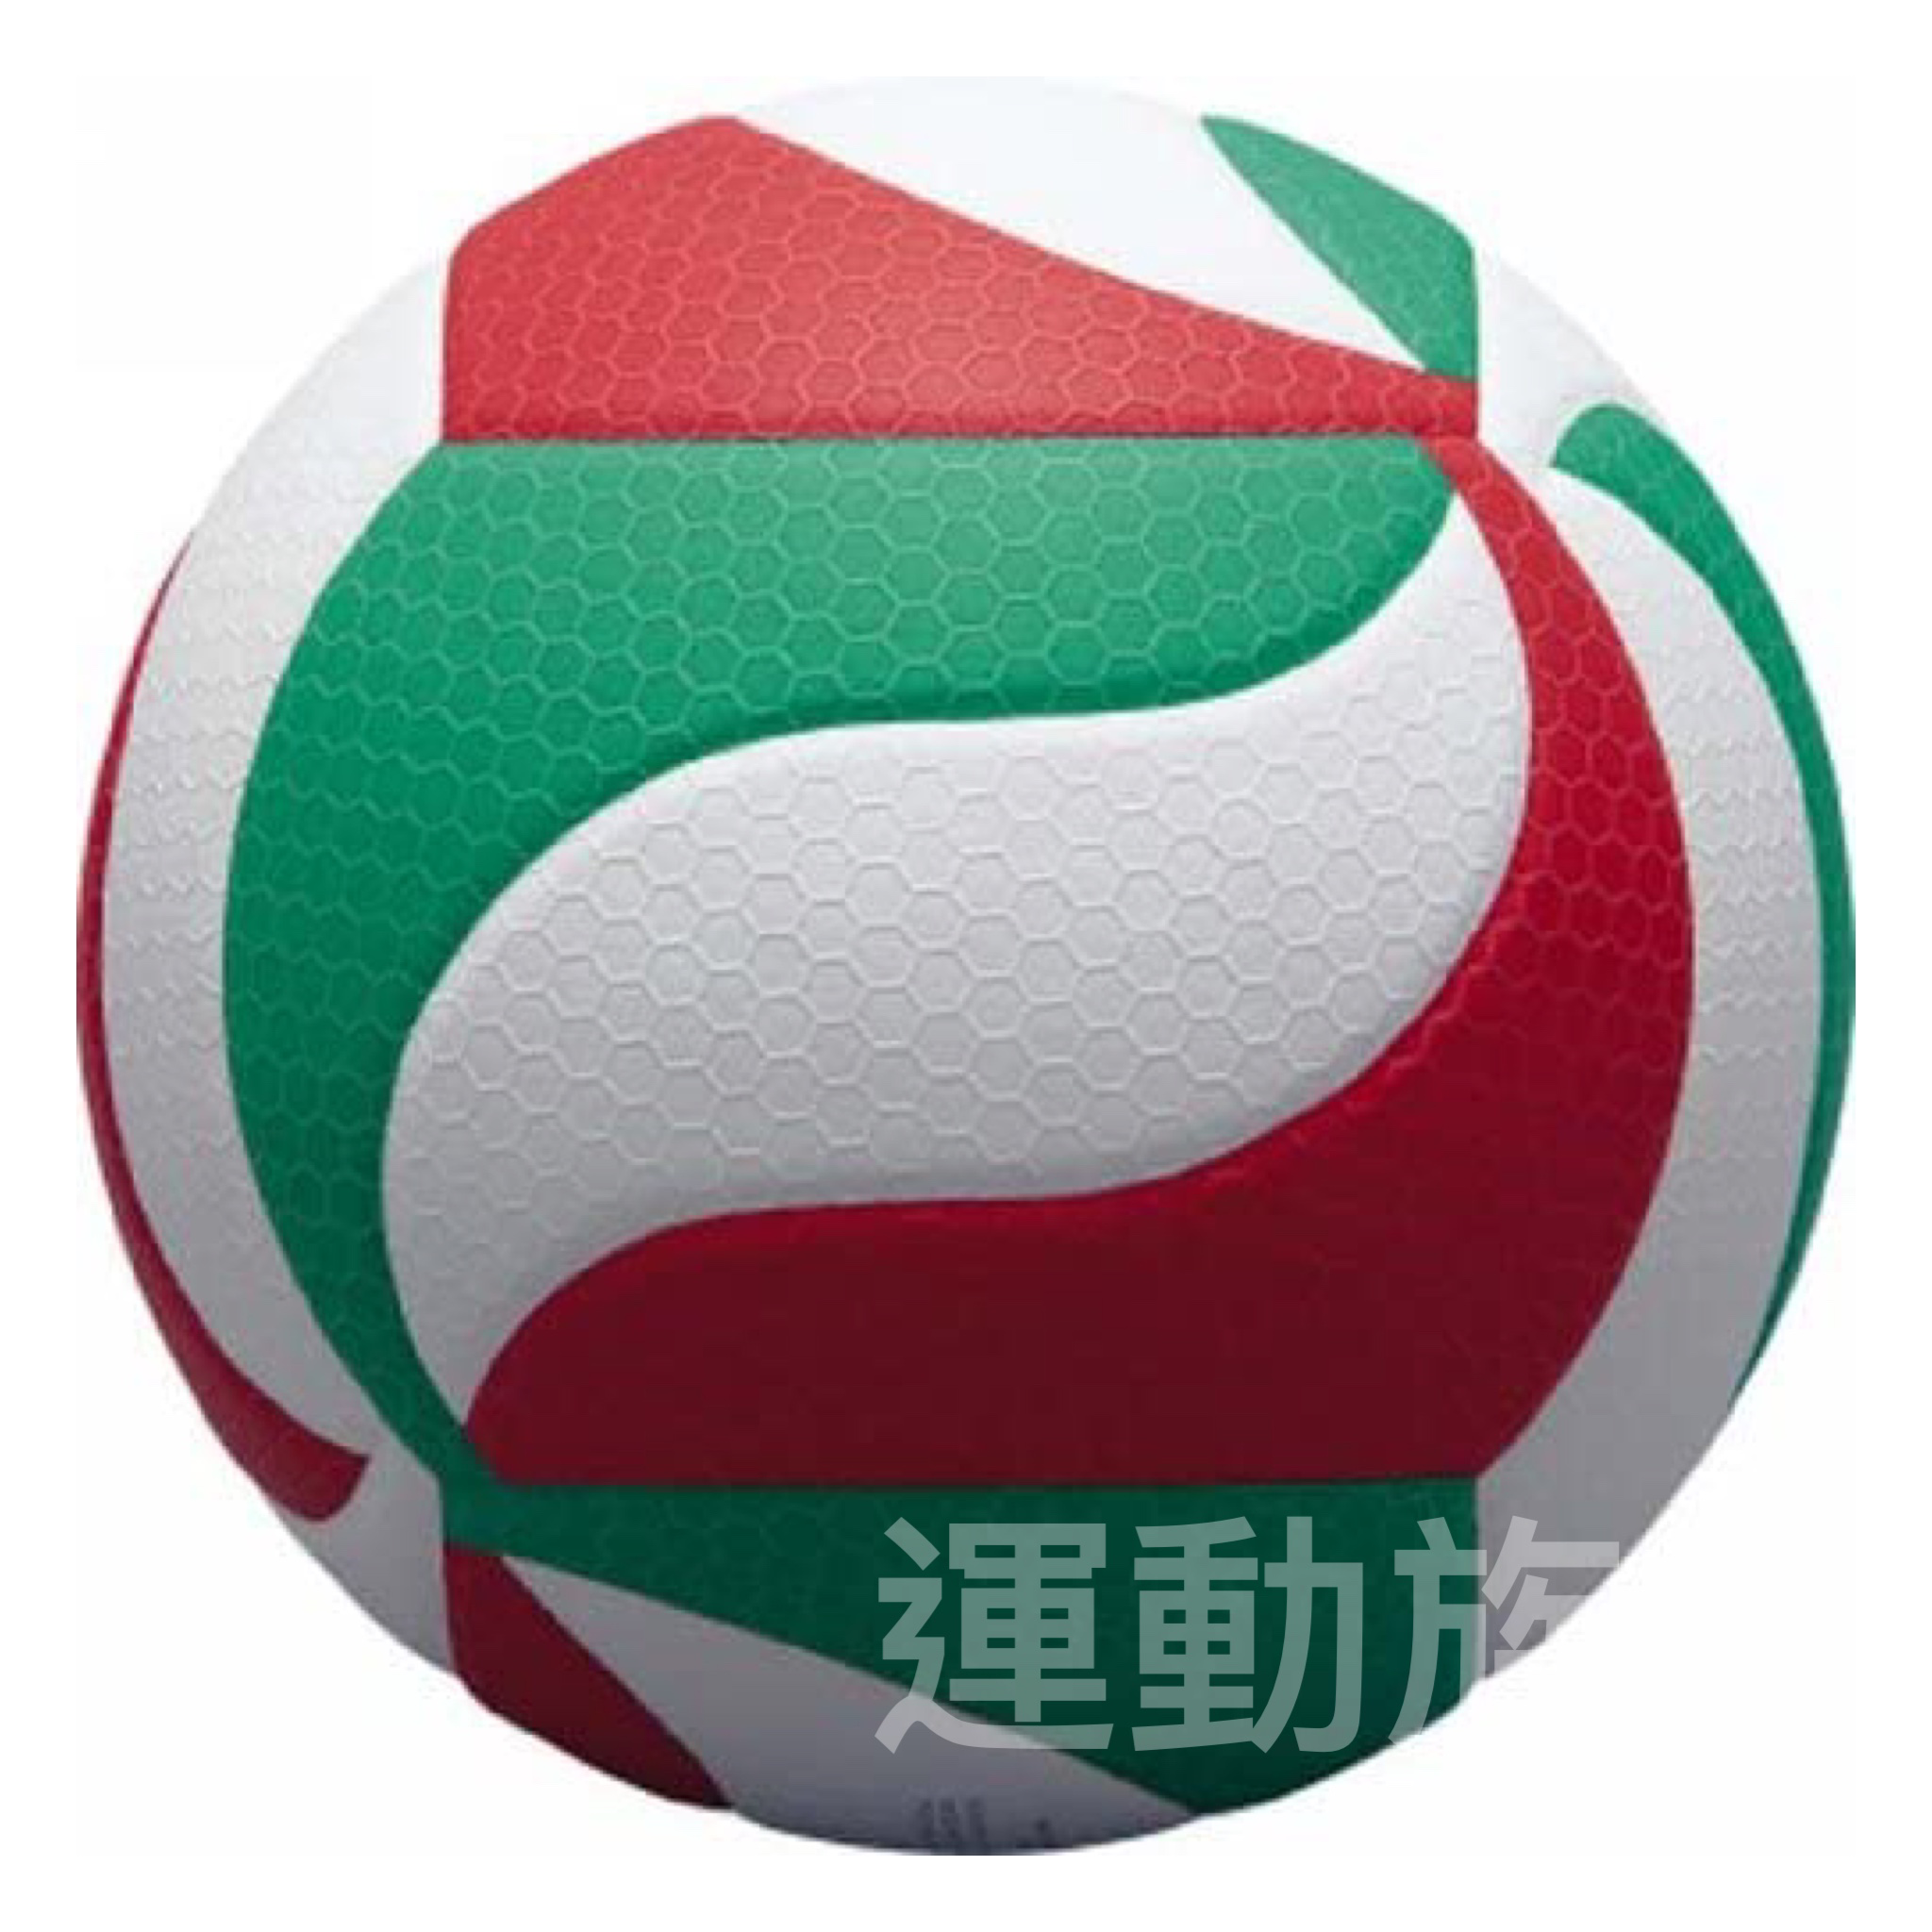 【 排球】Molten V5M5000 排球5號Friistec 排球紅白綠色測試球訓練 